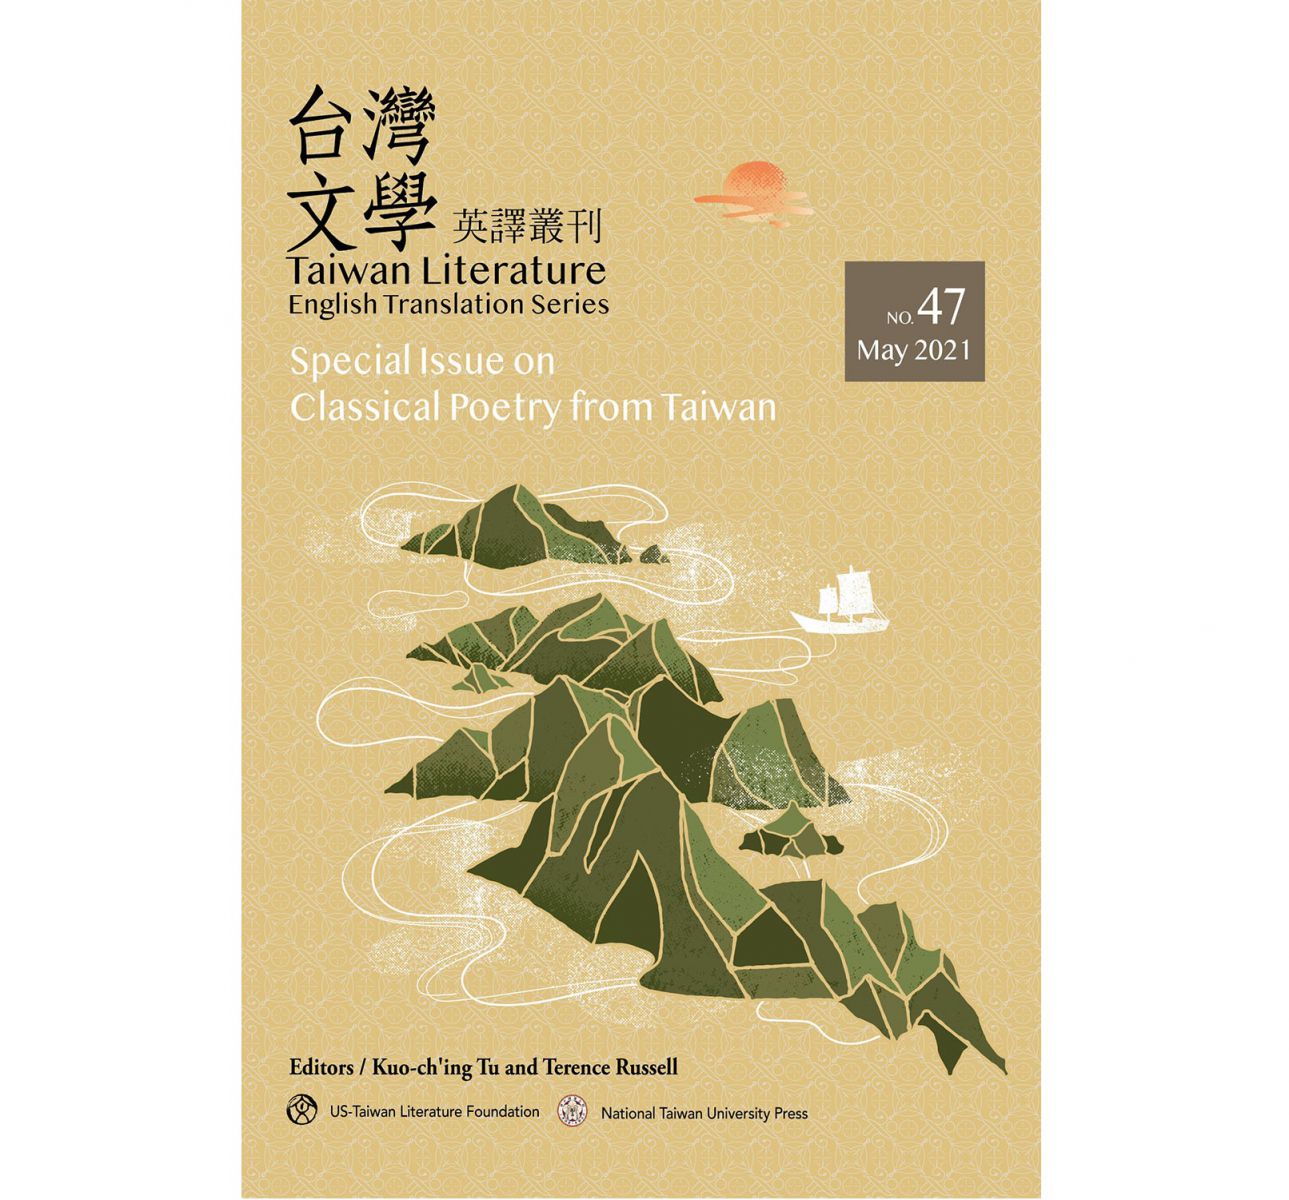 《台灣文學英譯叢刊（No. 47）》呈現台灣古典漢詩的特色，反映社會和生活的開闊性